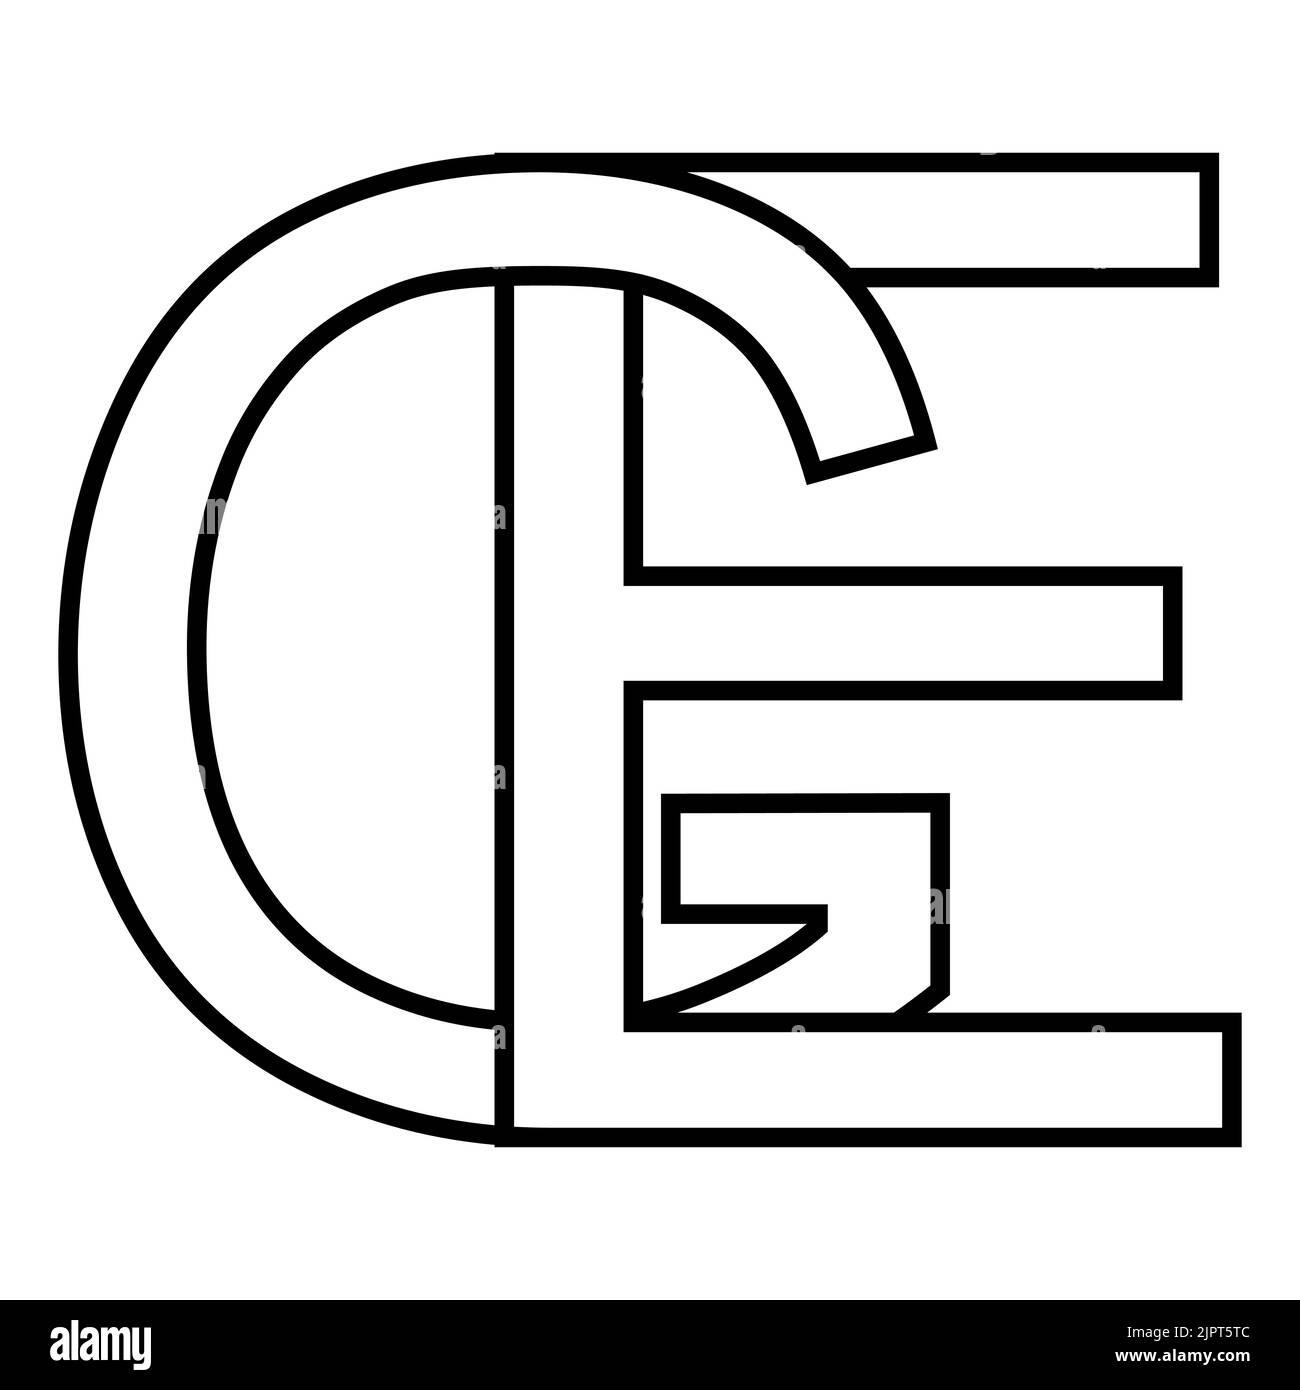 Logo sign ge eg icon nft interlaced letters g e Stock Vector